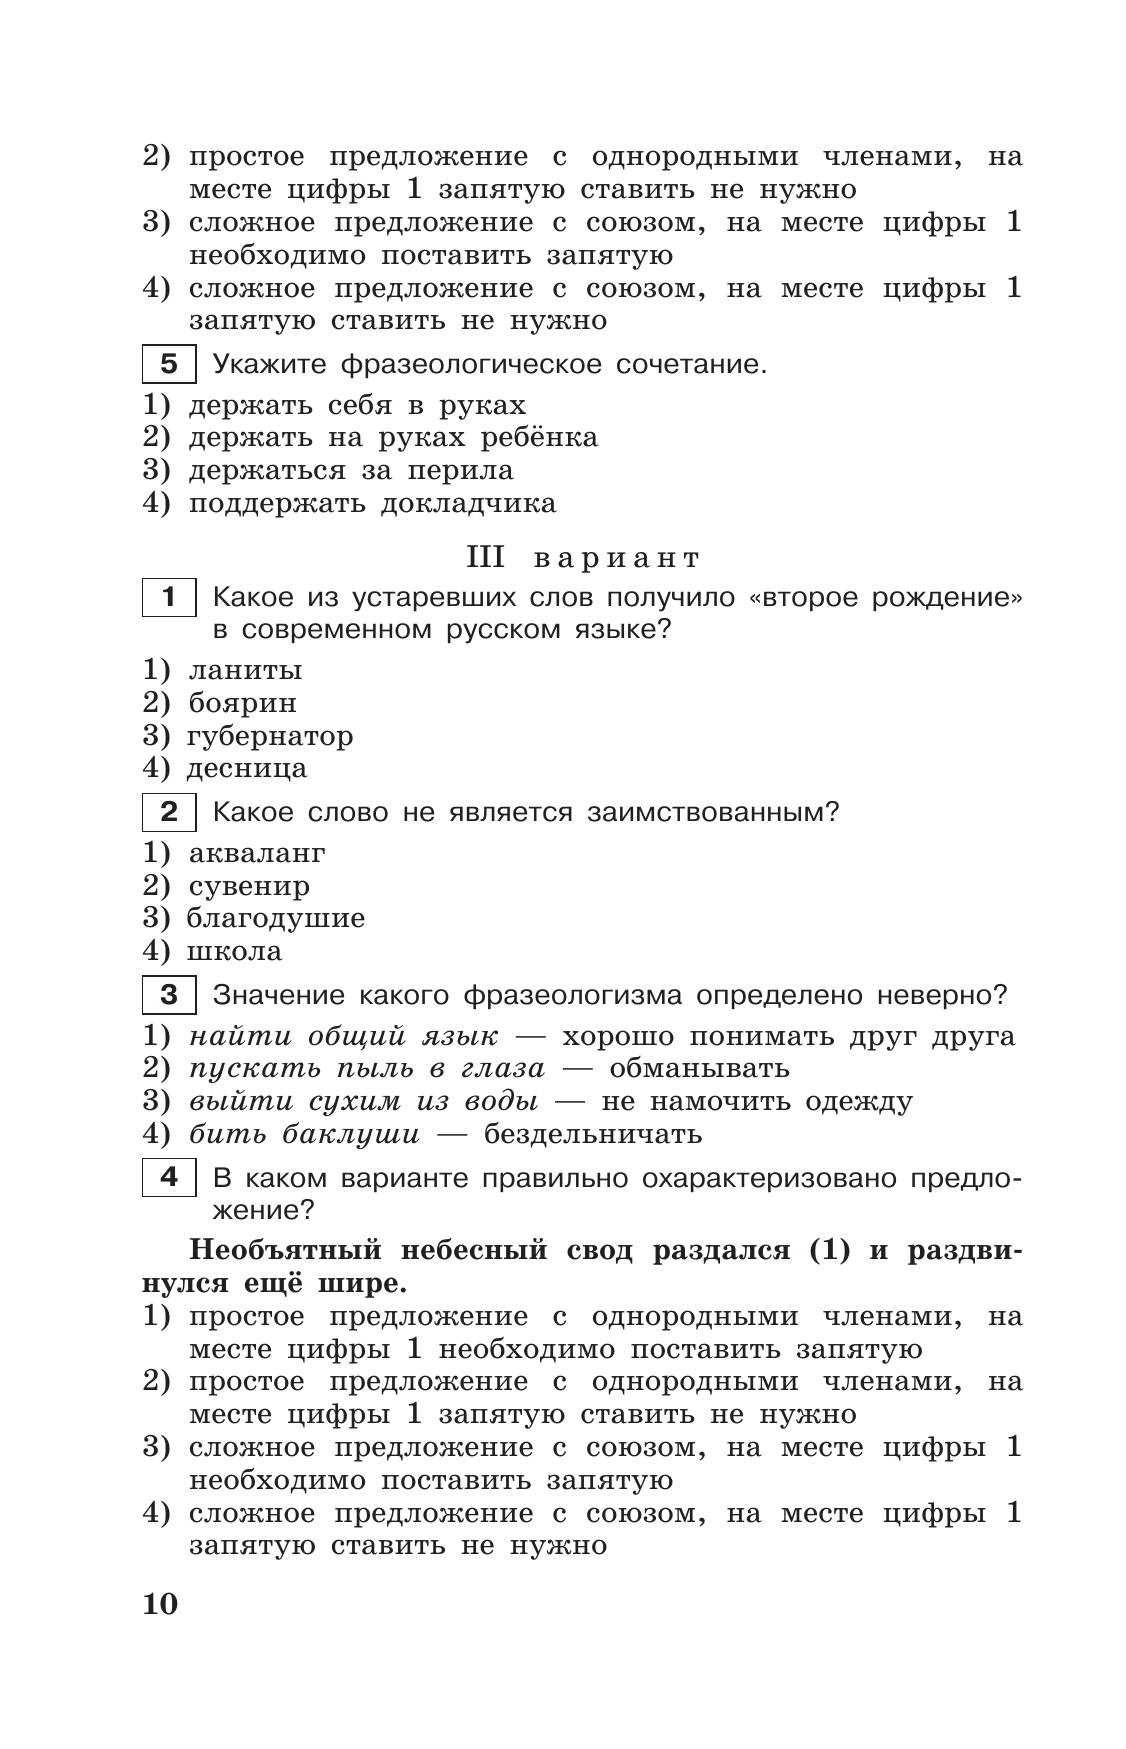 Тестовые задания по русскому языку. 7 класс. 11